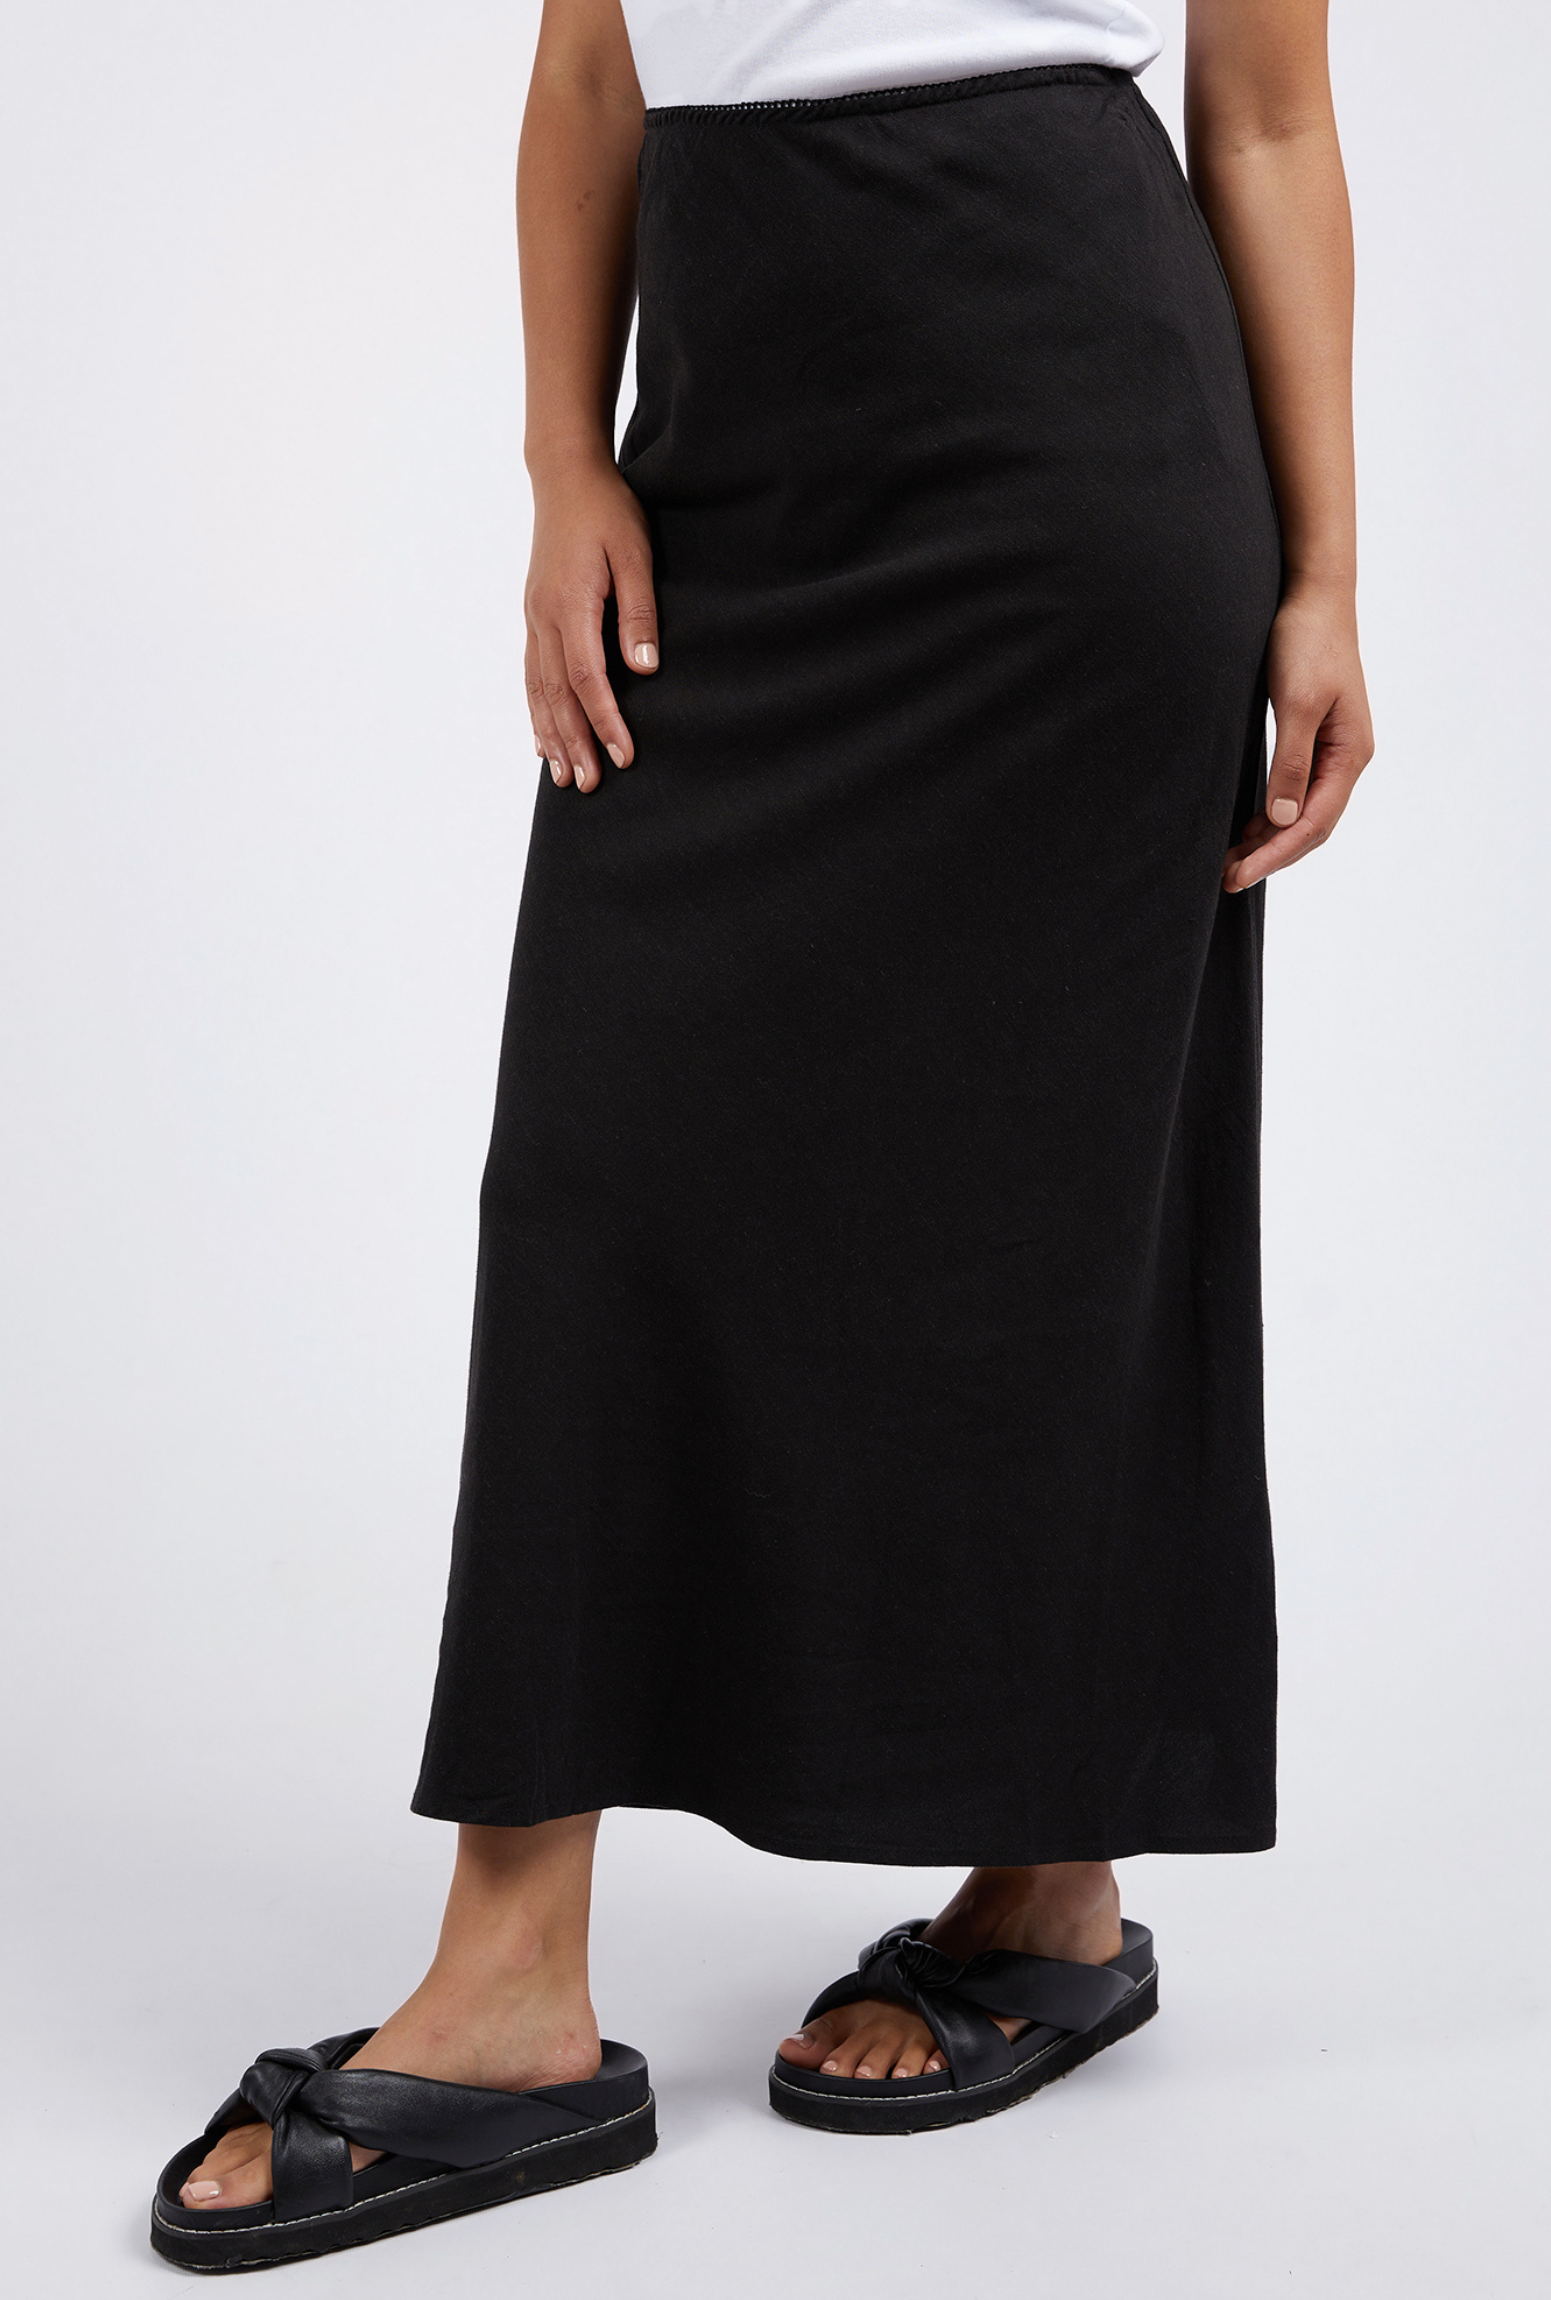 Foxwood Bronte Linen Skirt - Black